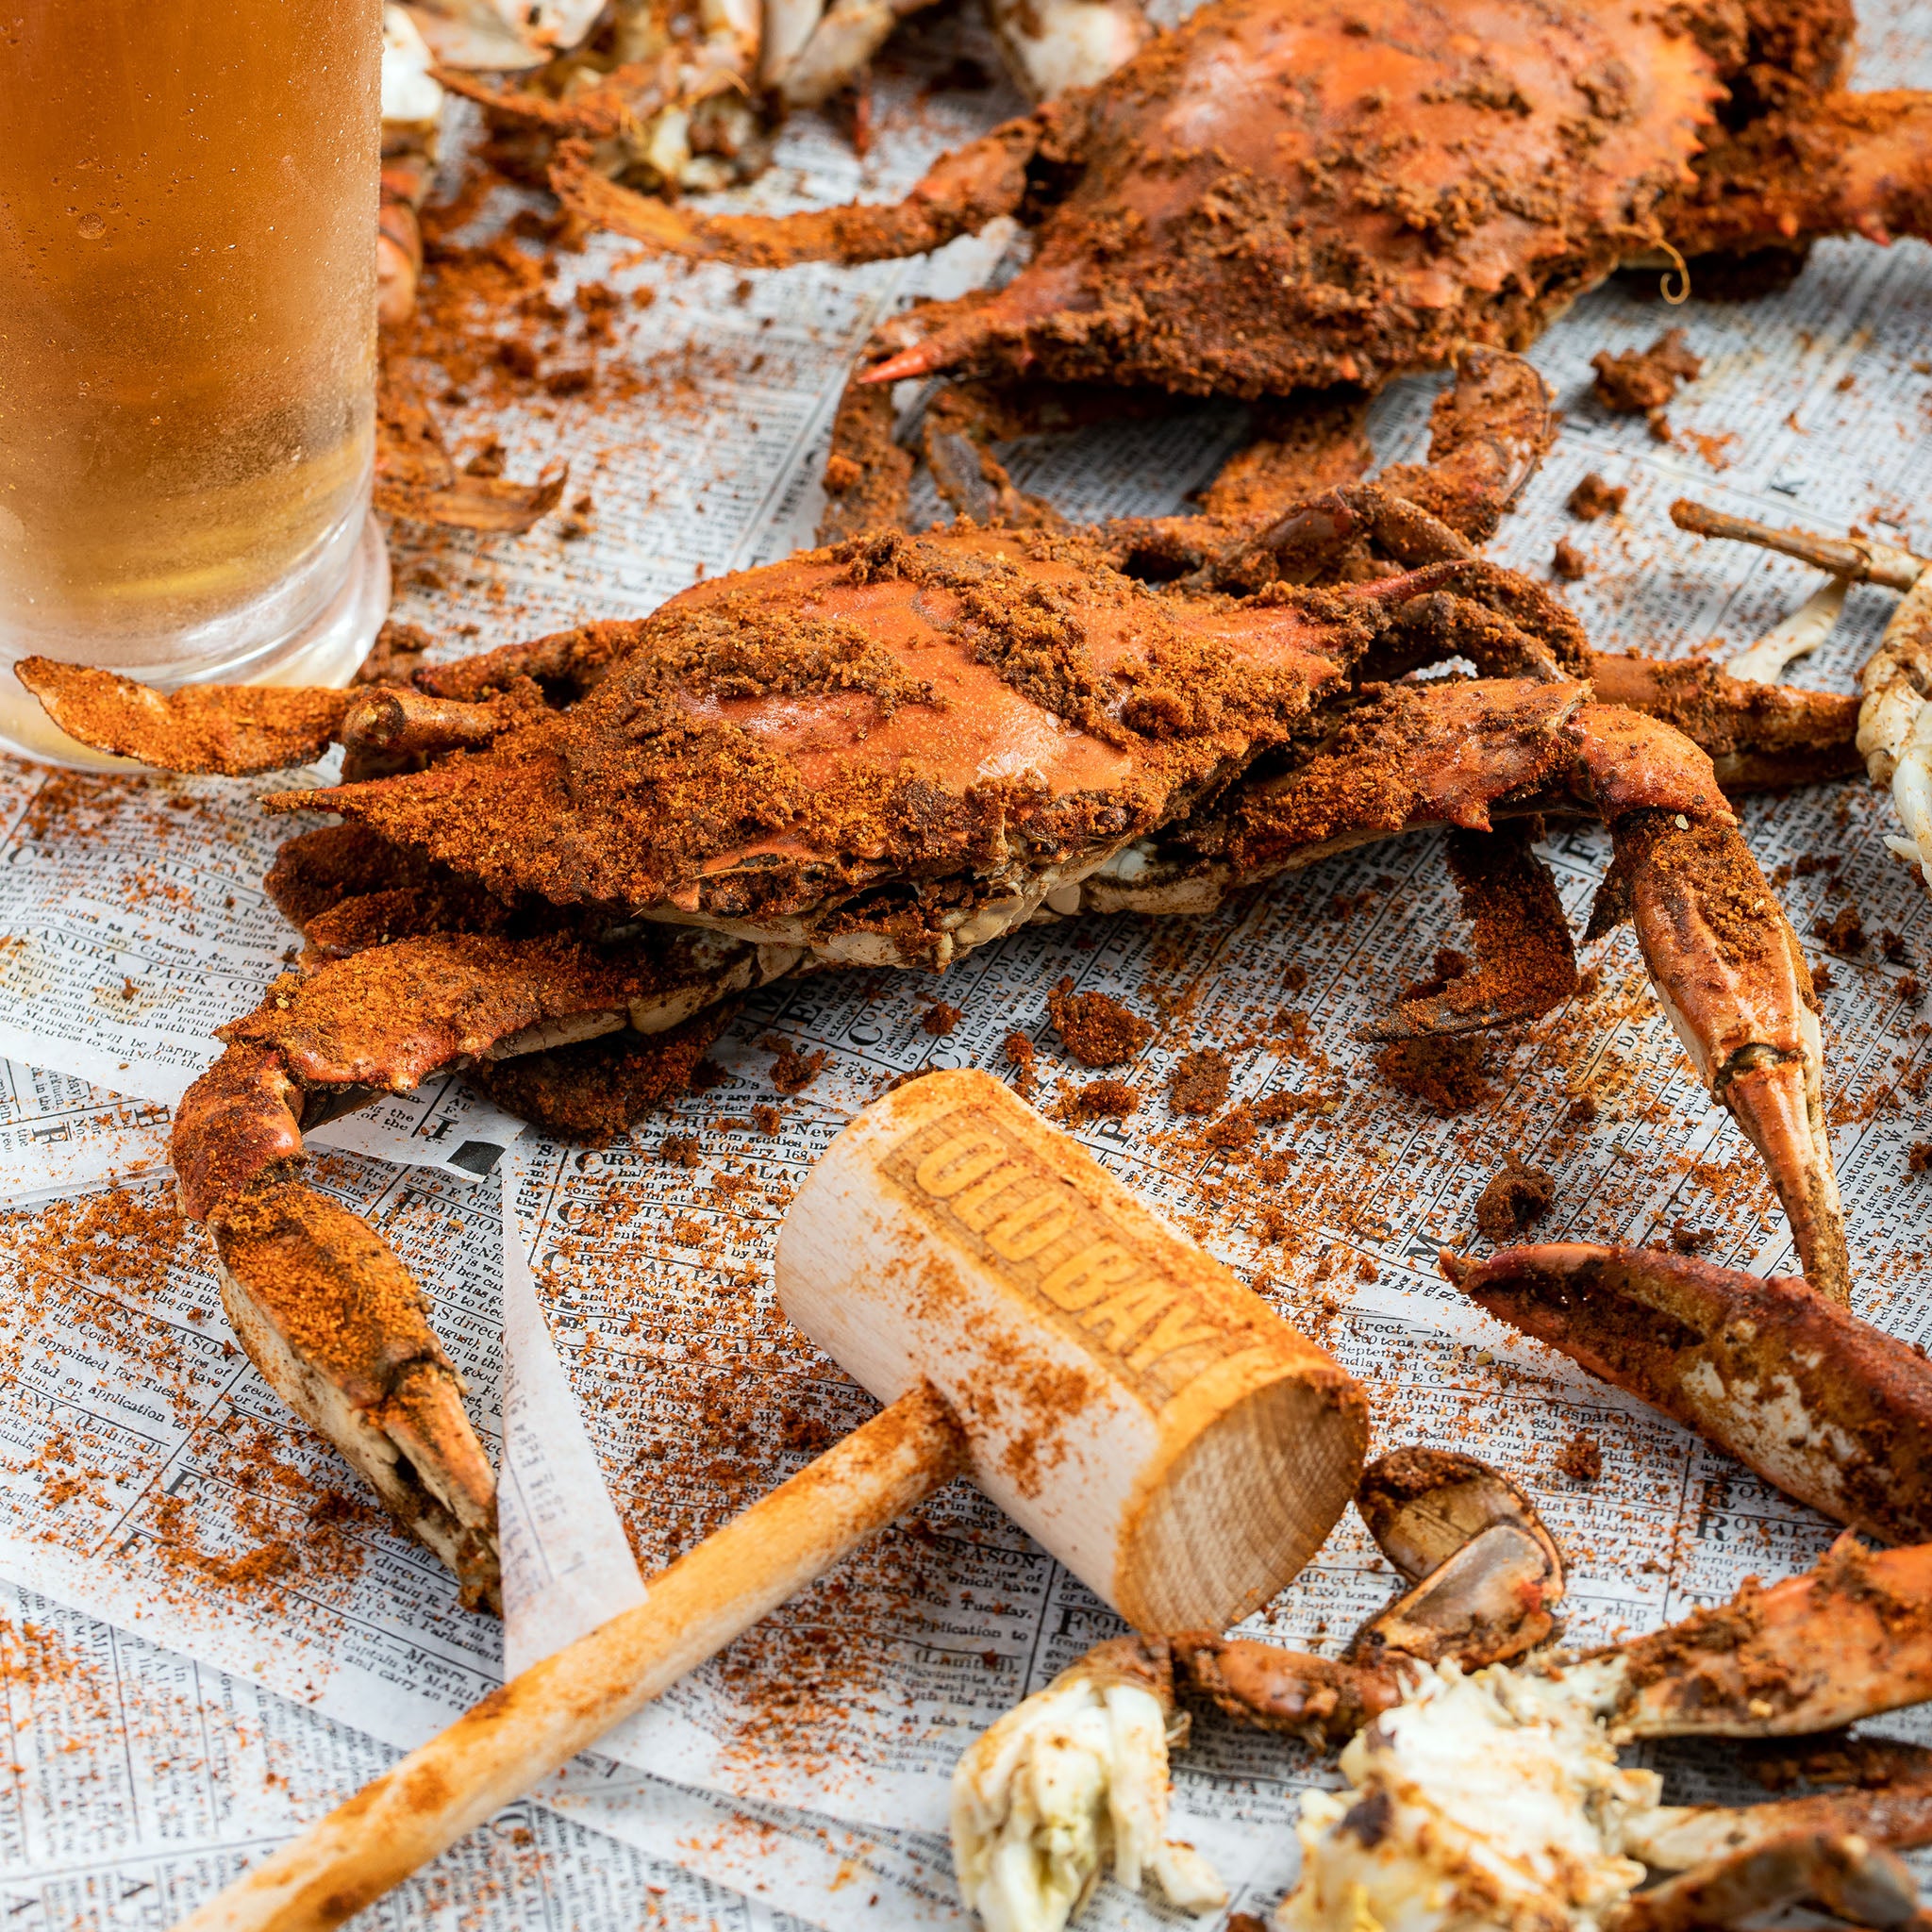 Crab Mallet Wood – The Seasoned Gourmet